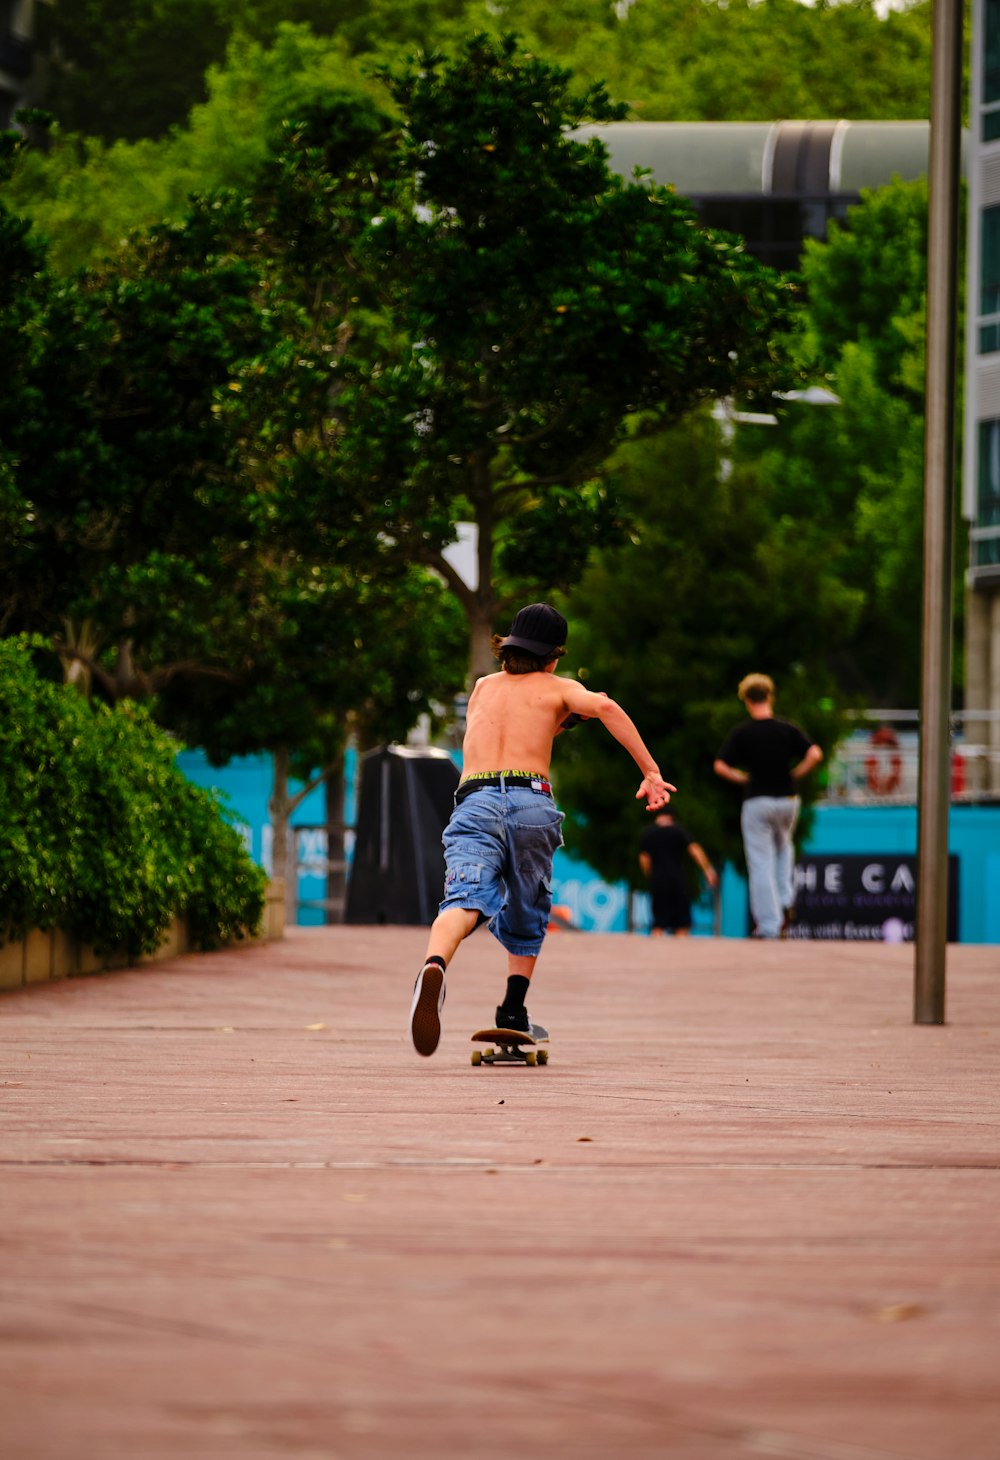 a young boy riding a skateboard down a sidewalk